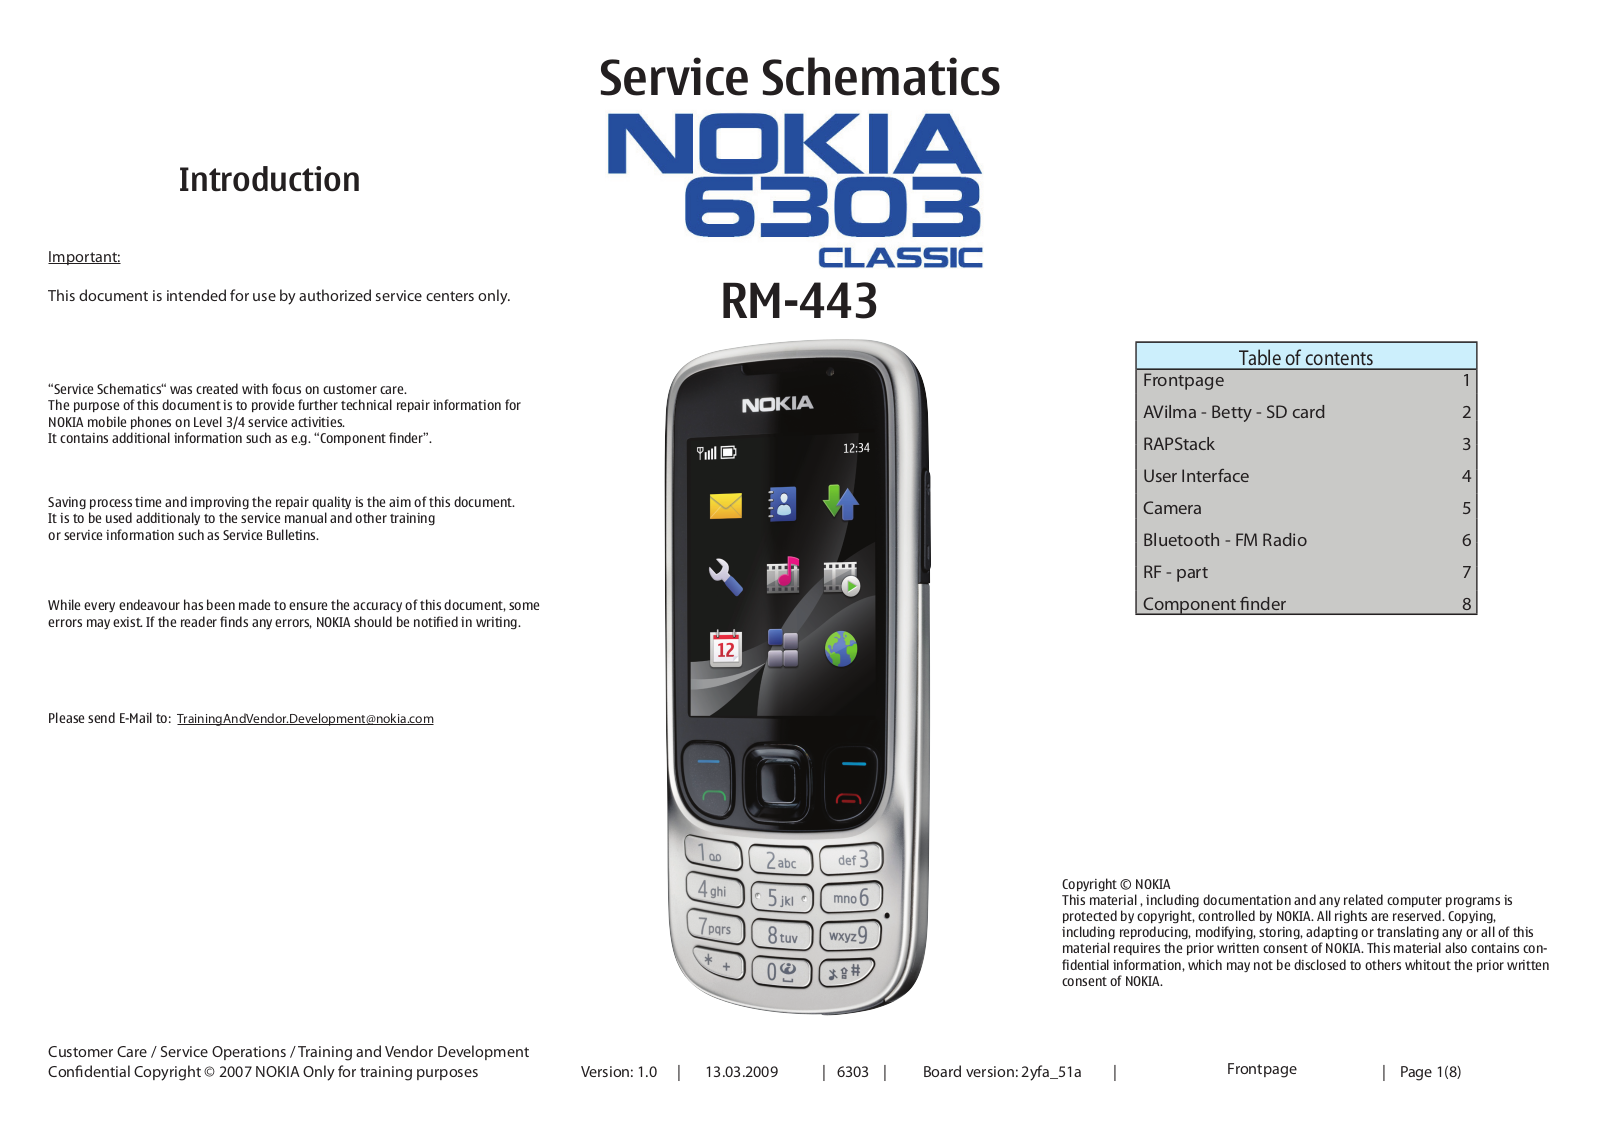 Nokia 6303 classic RM-443 Schematic